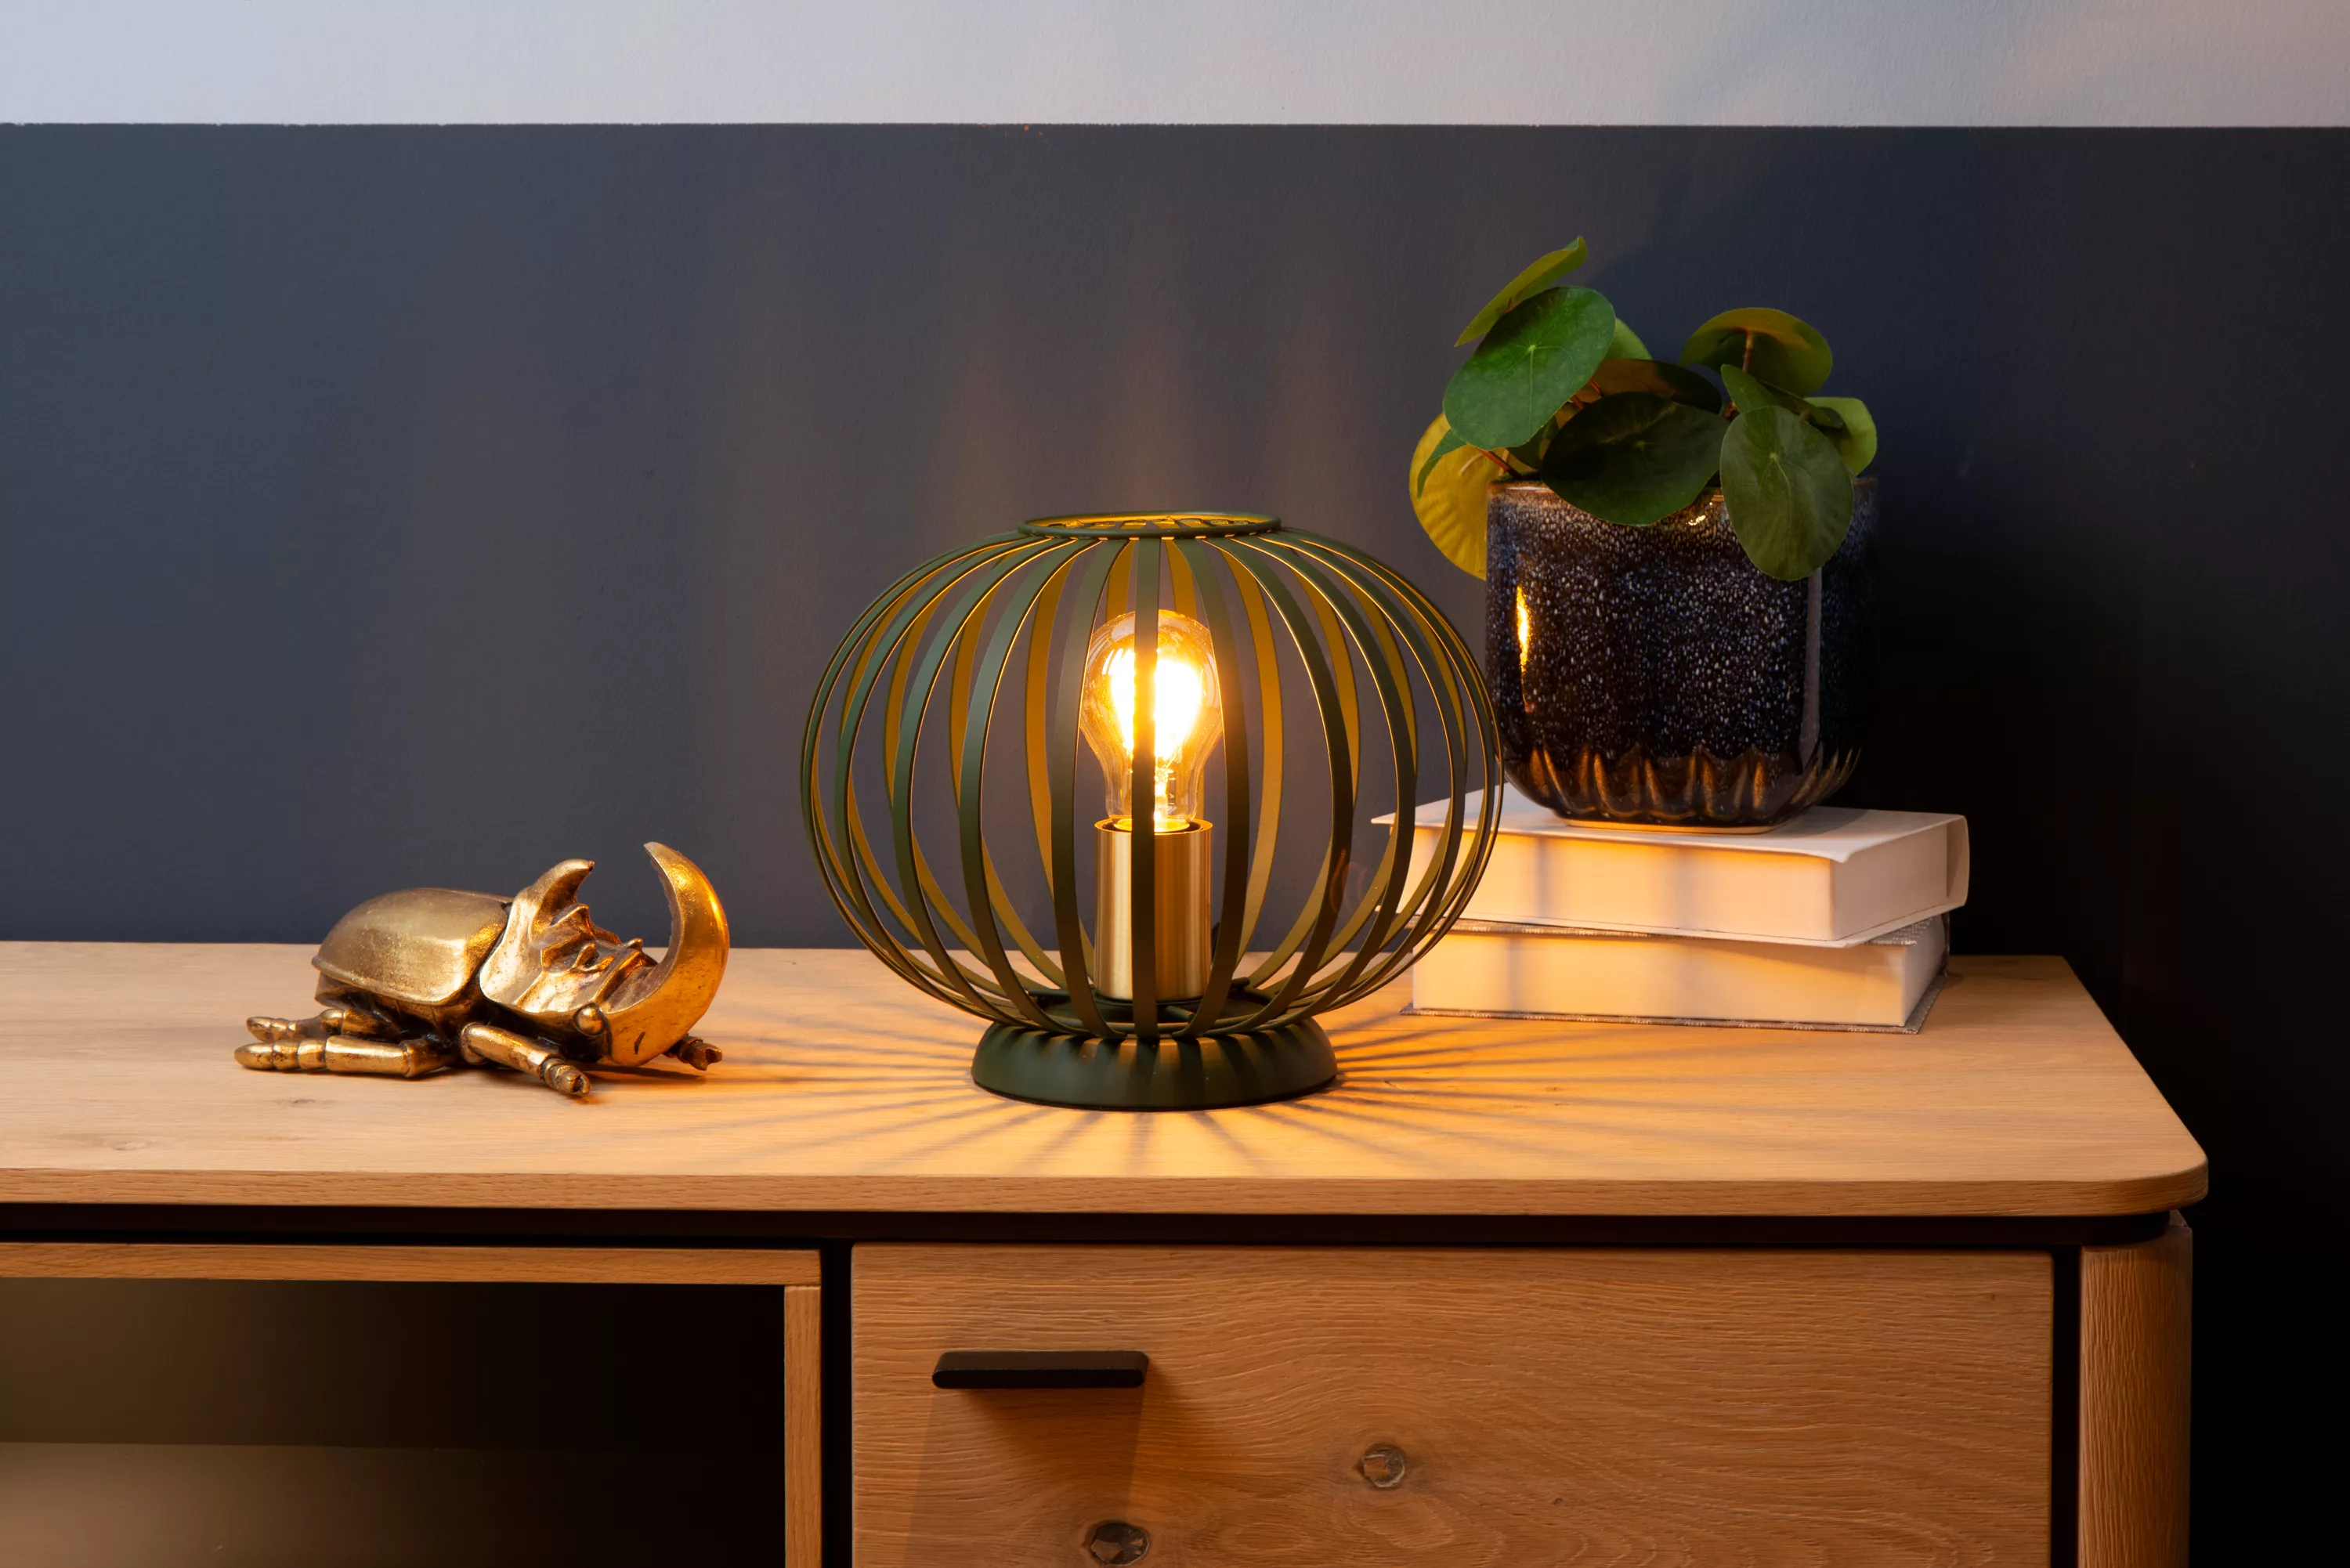 Moderní stolní lampička Manuela tvořená dráty v zeleném provedení se hodí do moderního interiéru i domu ve venkovském stylu.